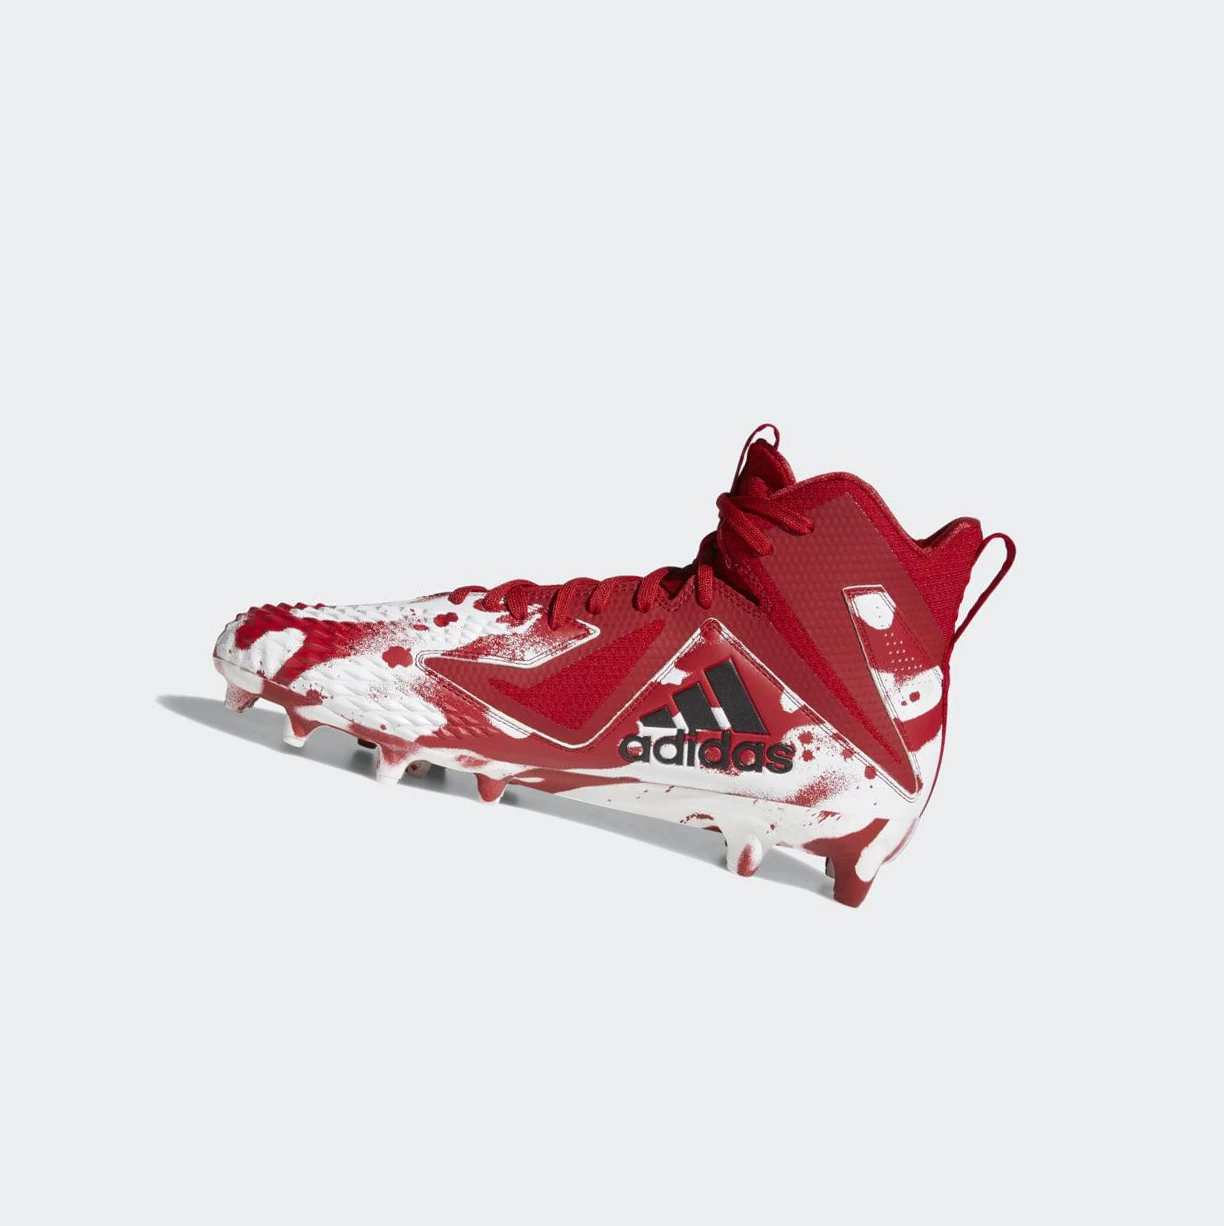 Kopačky Adidas Freak x Carbon Stredne Panske Červené | 986SKMRJQWV